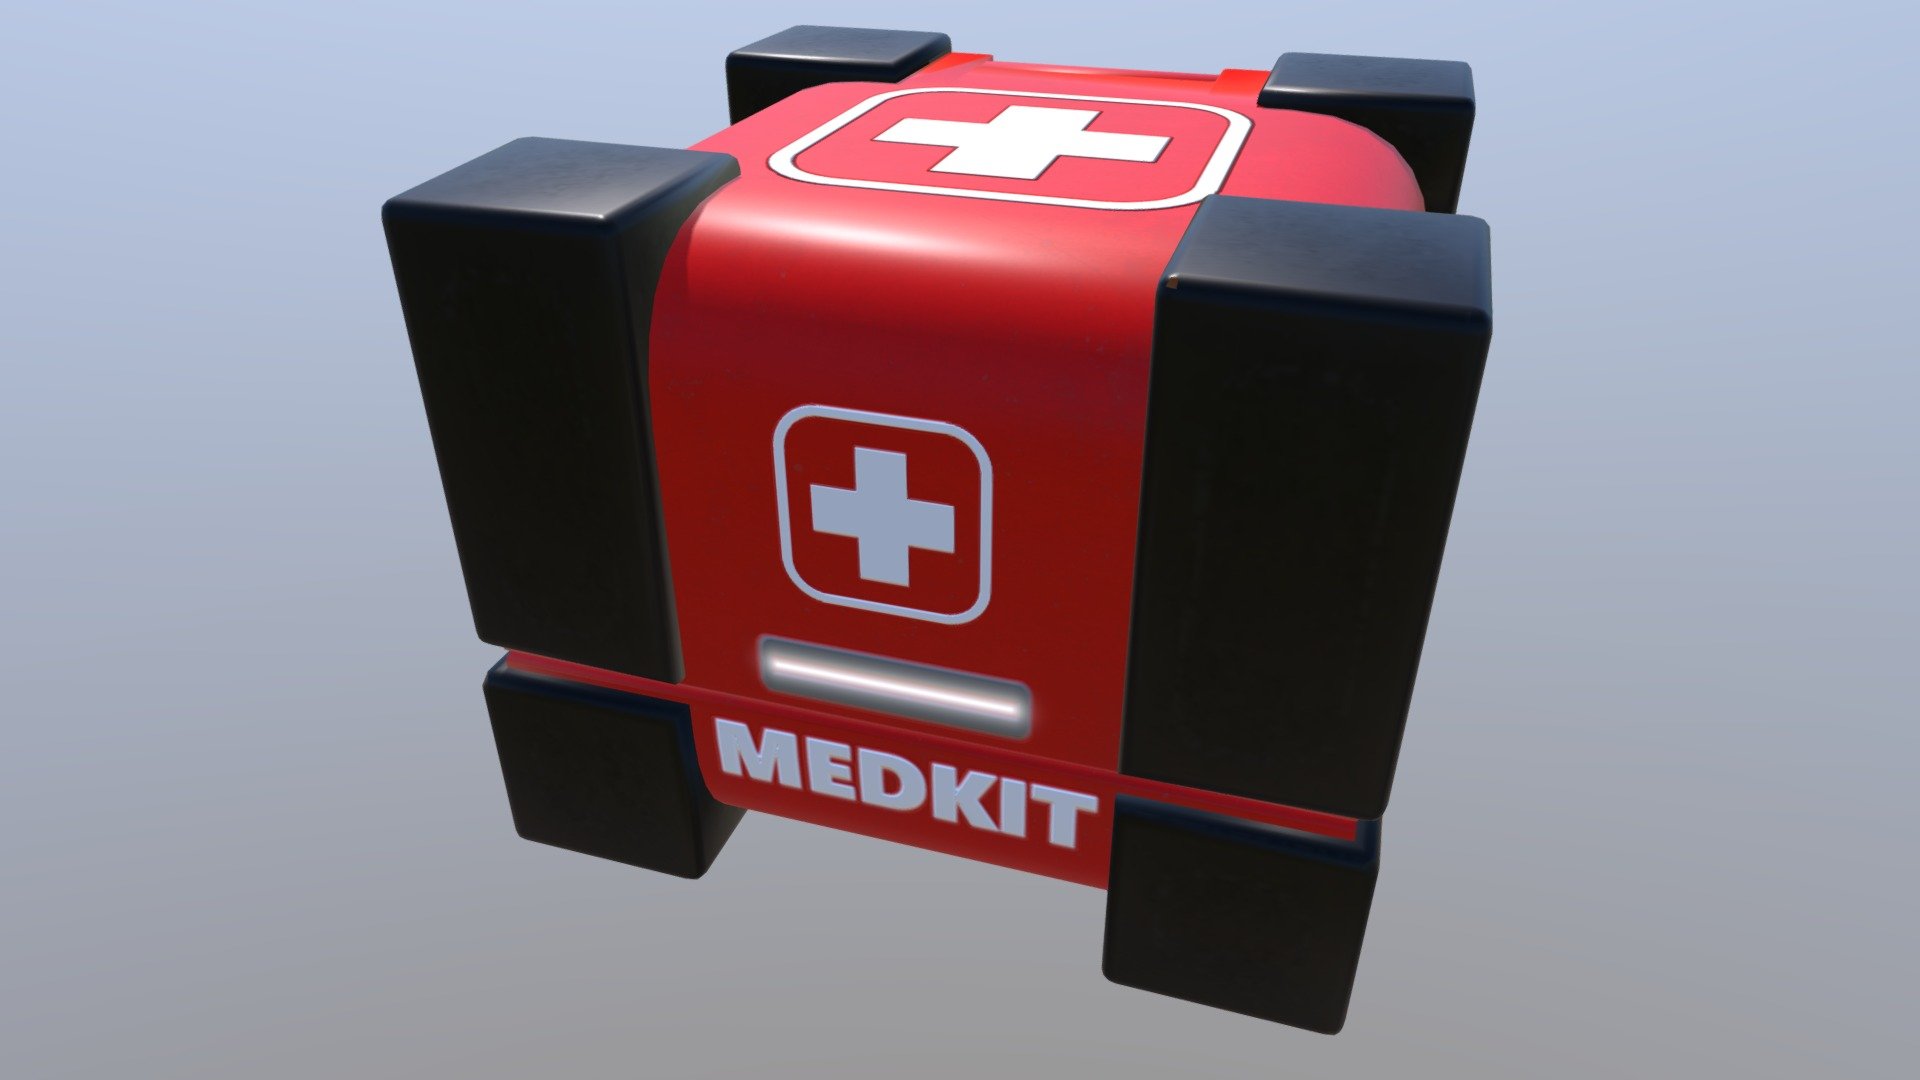 Medkit Box 4 - 3D model by Anti-Ded 3d model